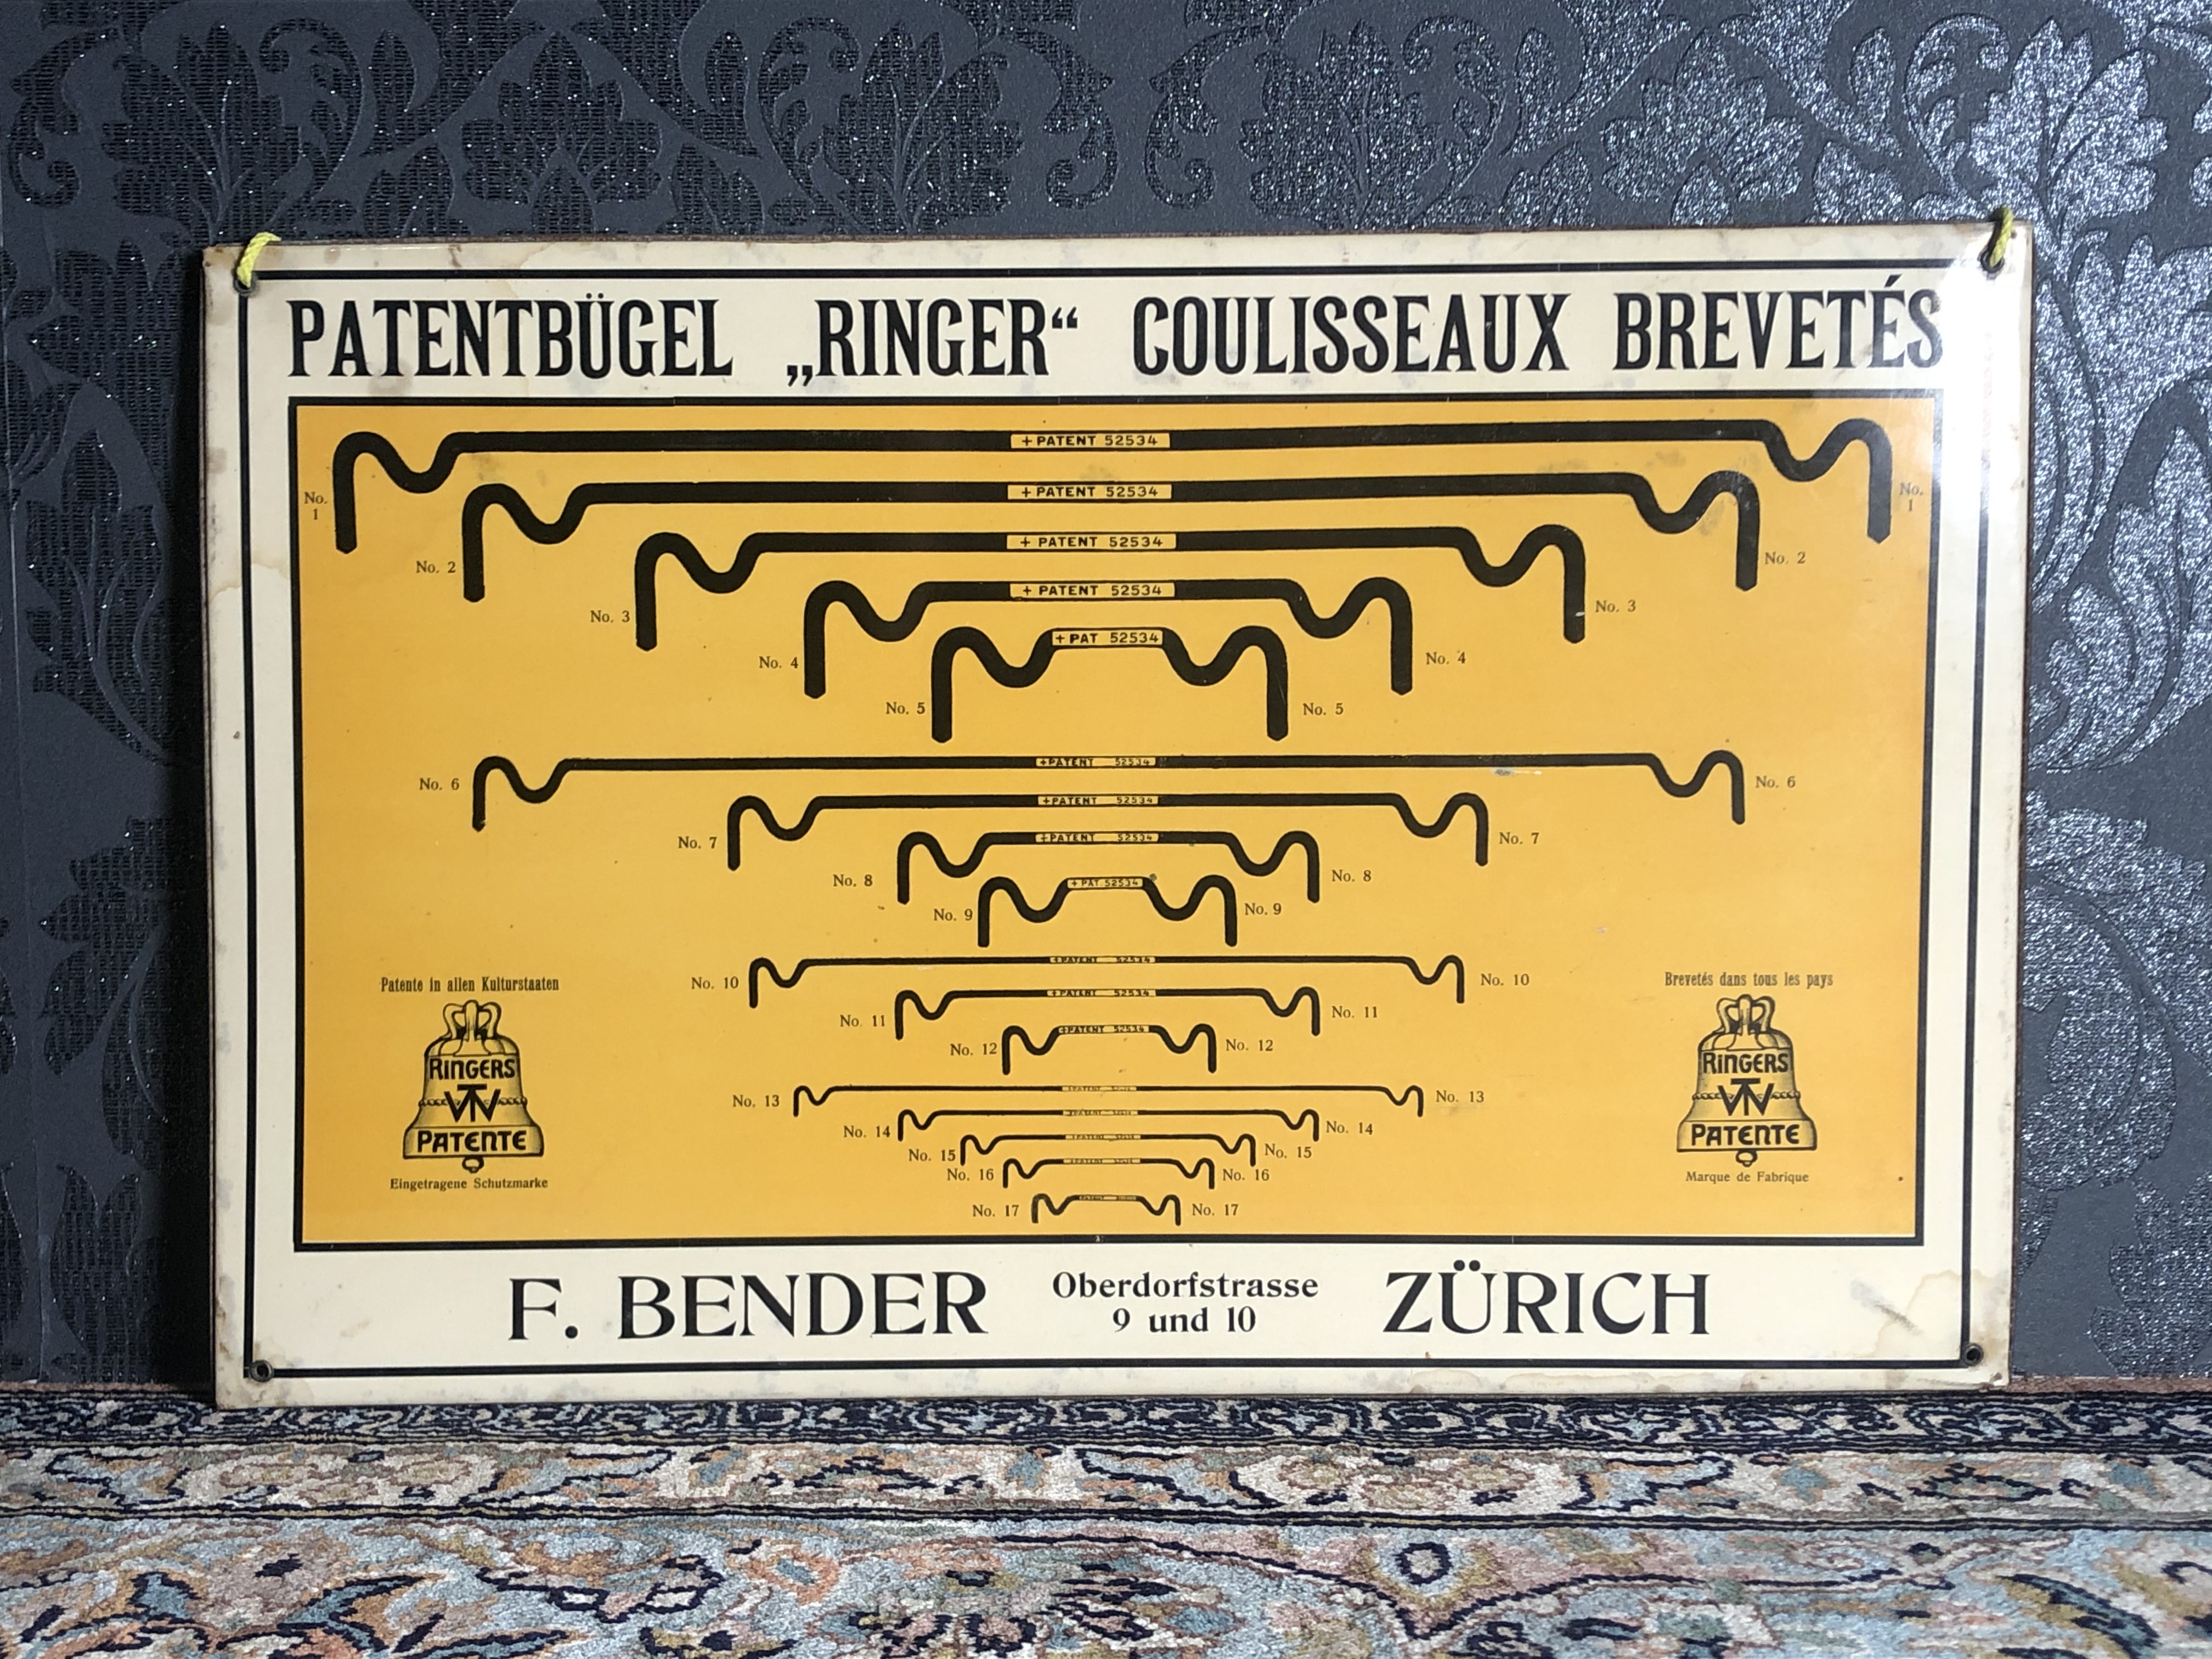 Patent Bügel "Ringer" Blechschild